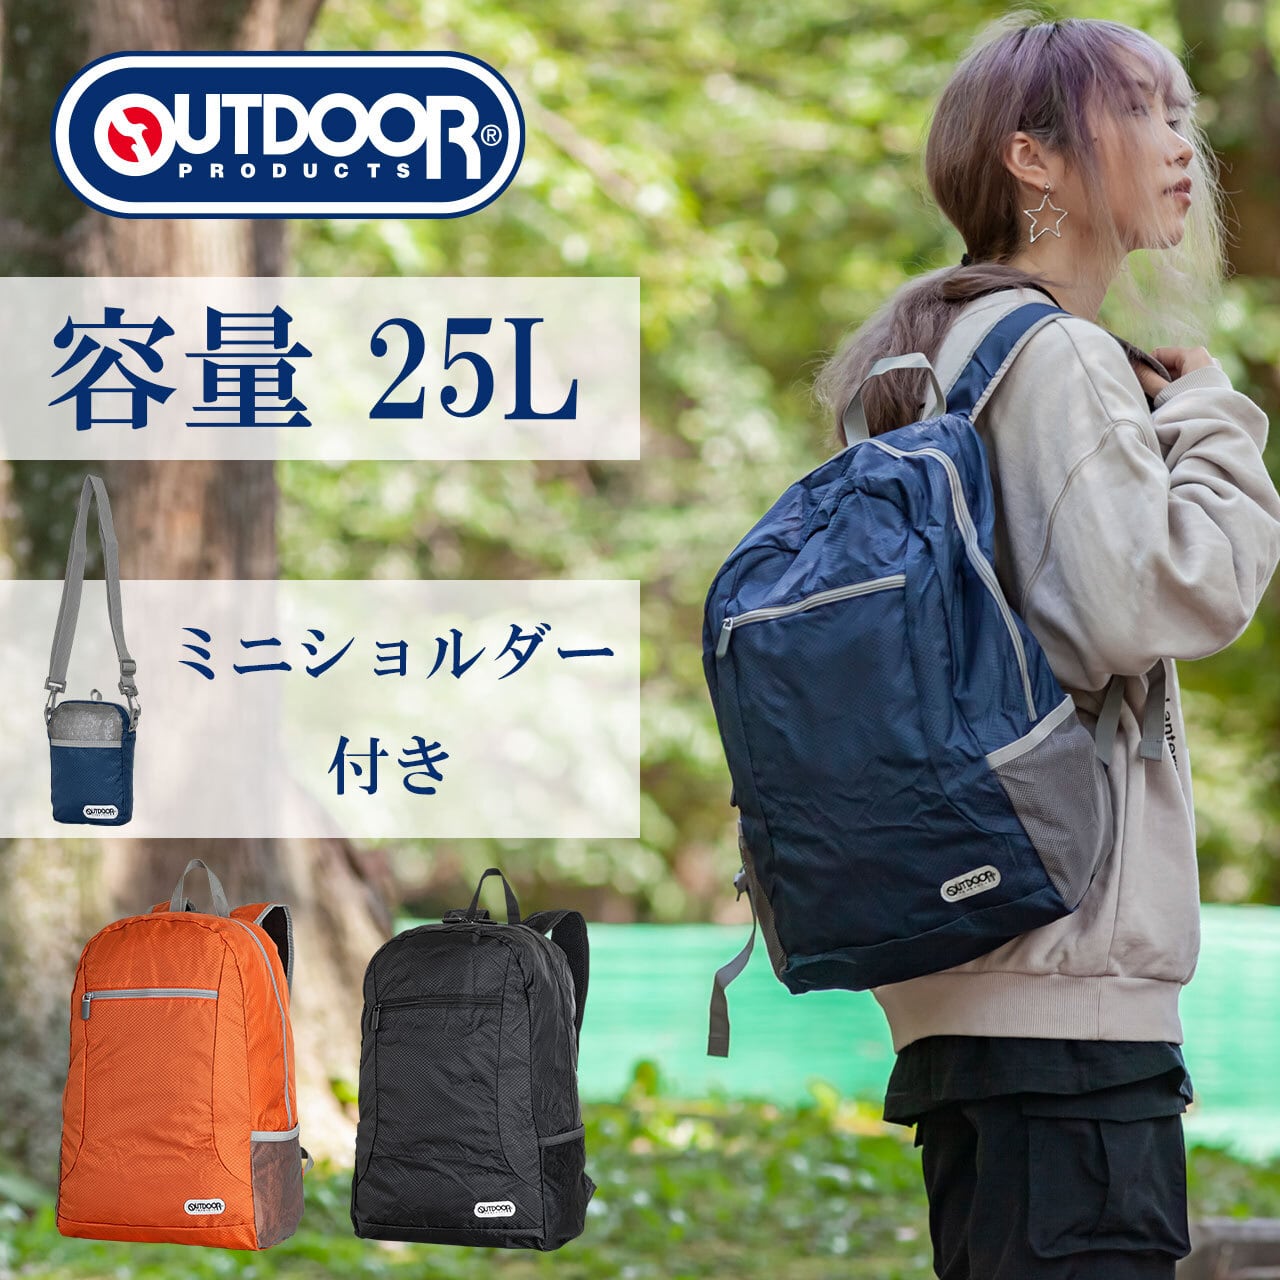 Od コンパクトデイパック 25l Outdoor Produts アウトドアプロダクツ Lojel Japan Online